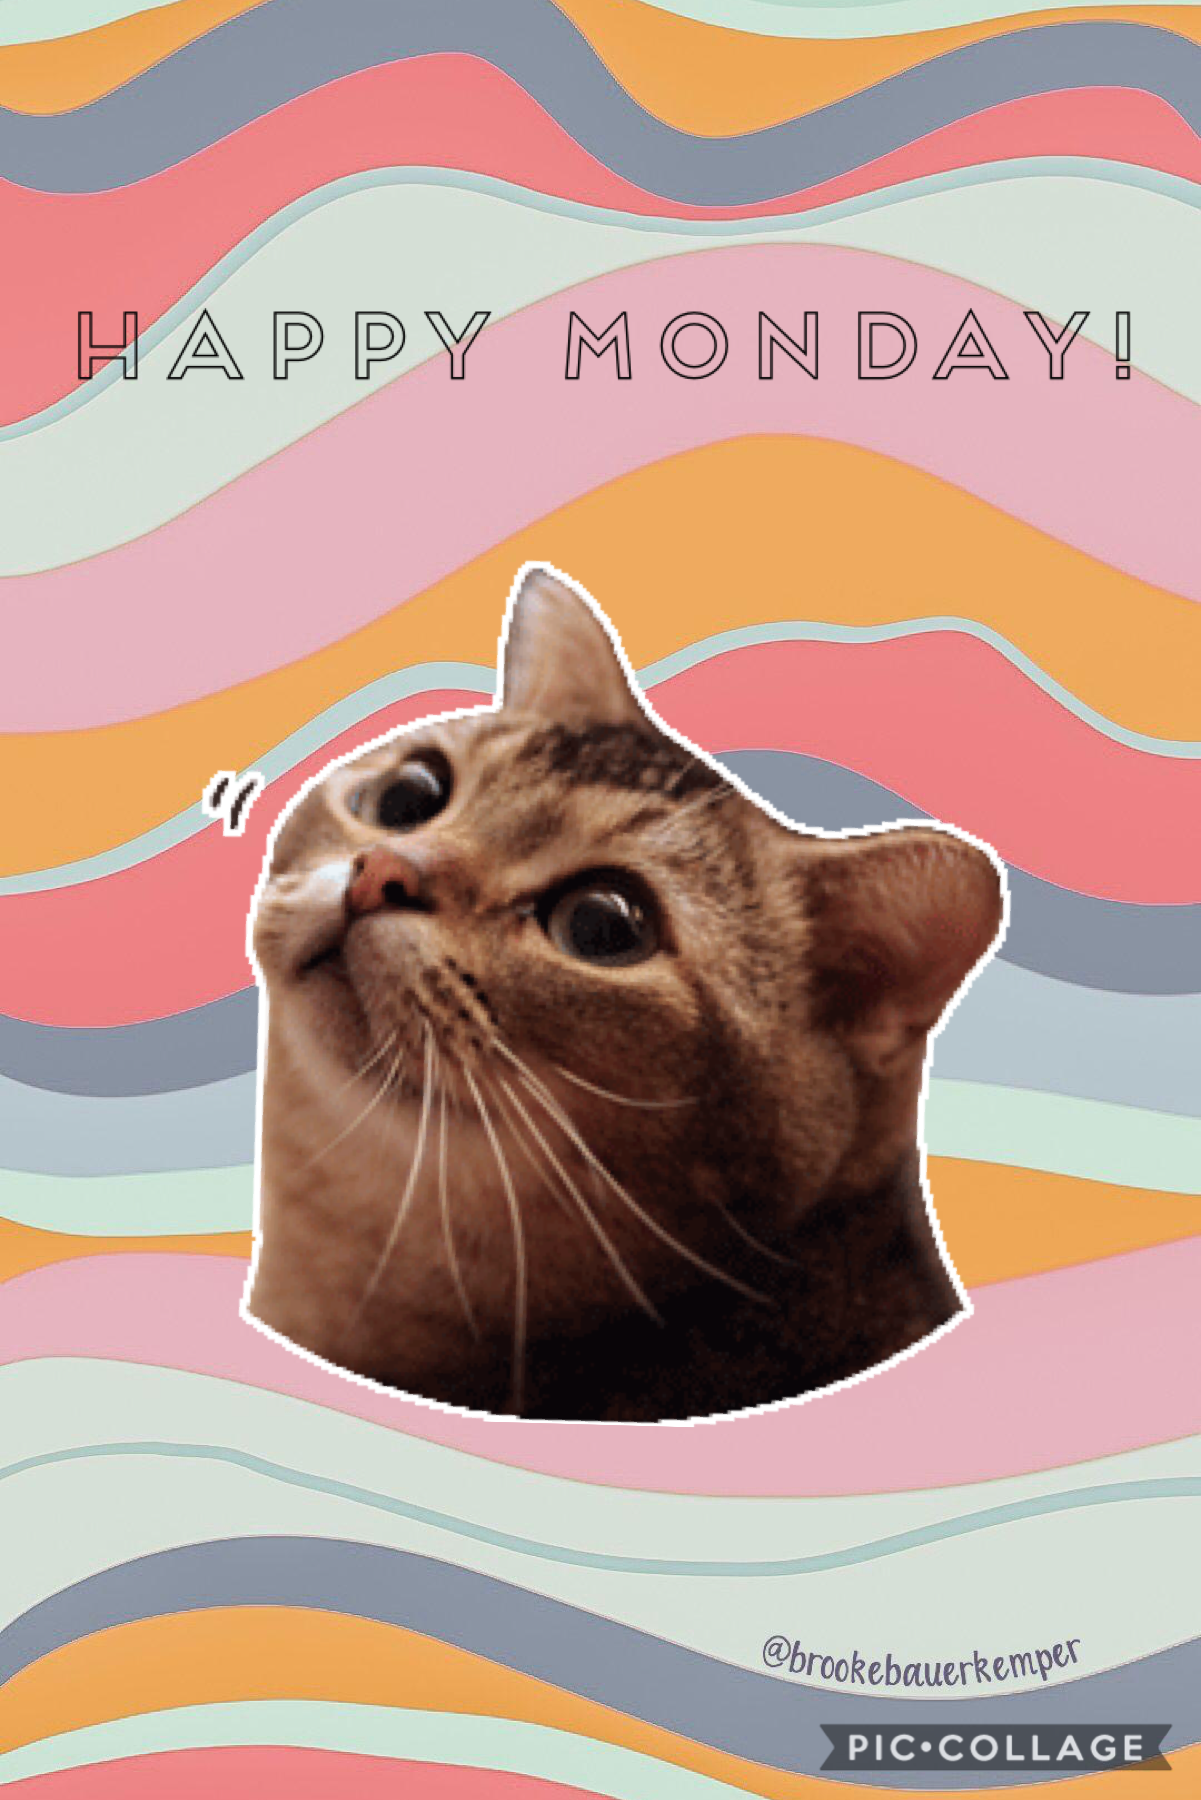 Happy Monday everybody!